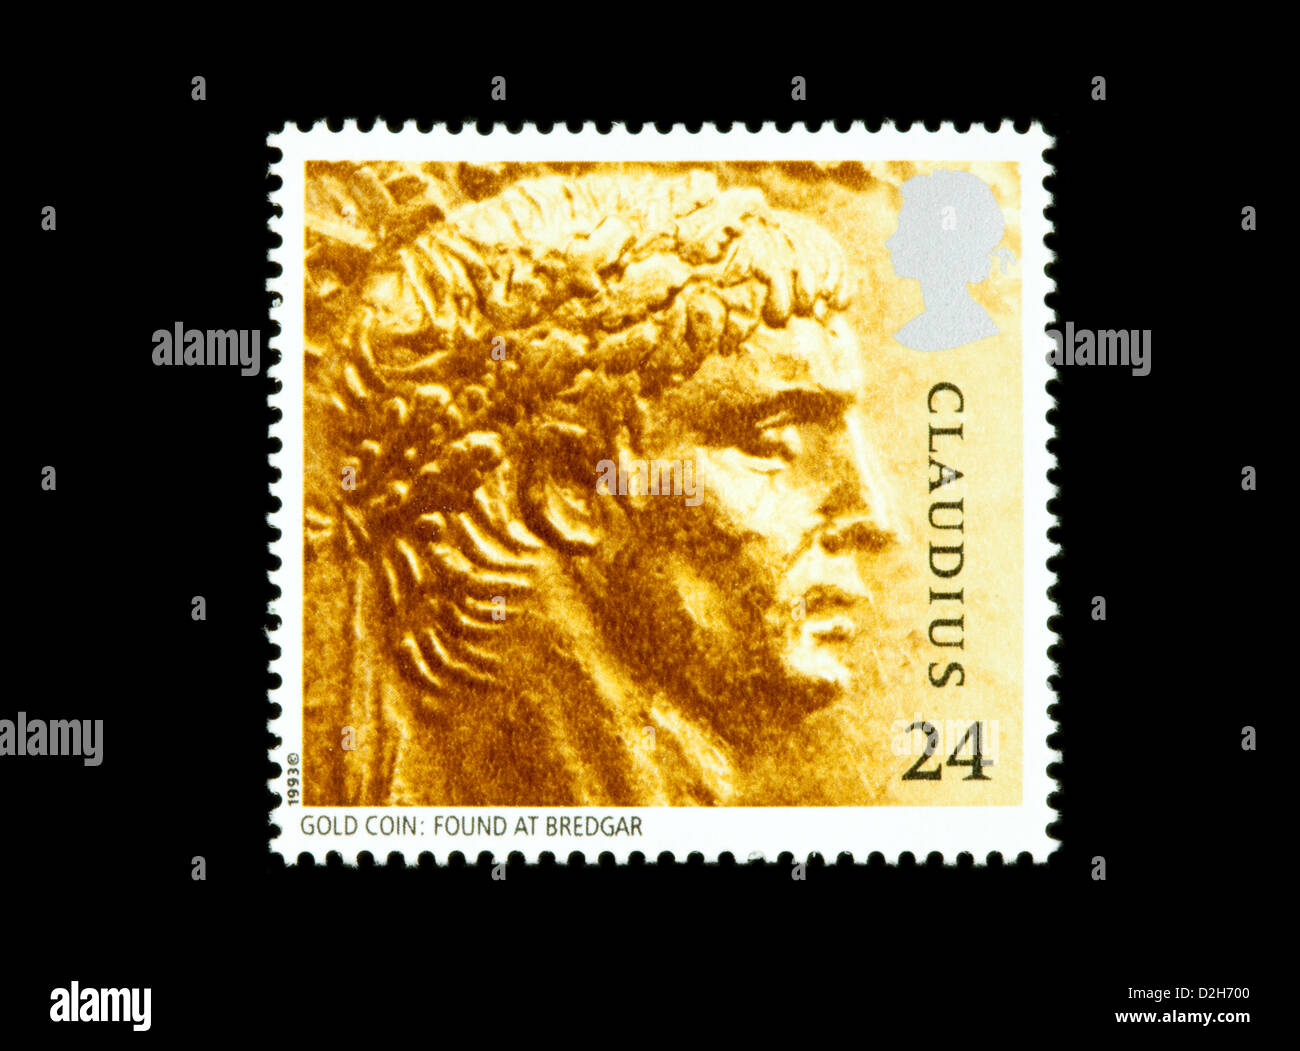 The Roman emperor Claudius on a 1993 British stamp issue commemorating Roman Britain, UK Stock Photo